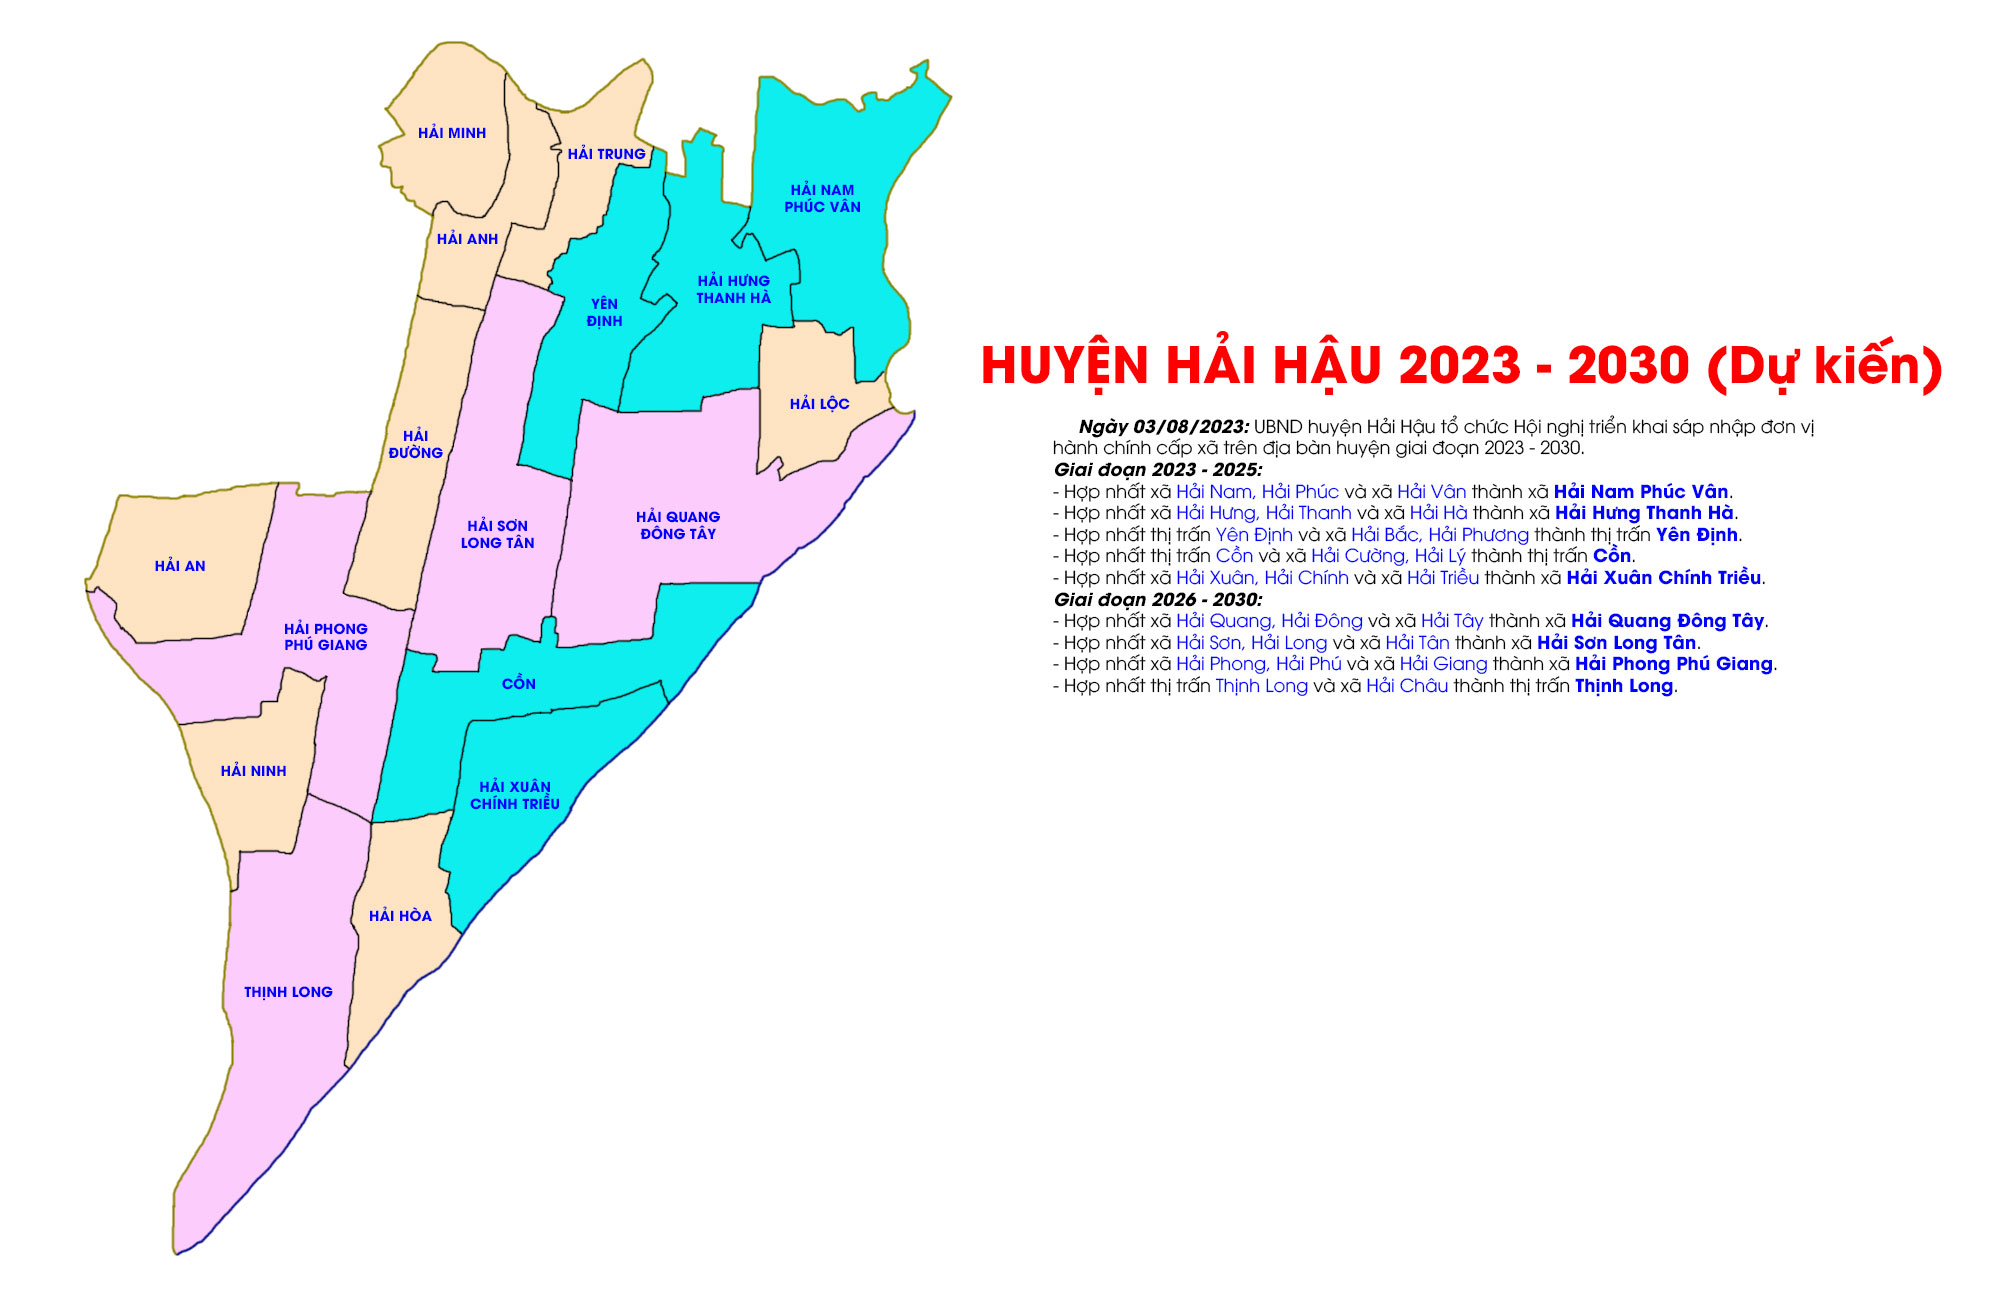 Huyện Hải Hậu dự kiến từ năm 2023-2030